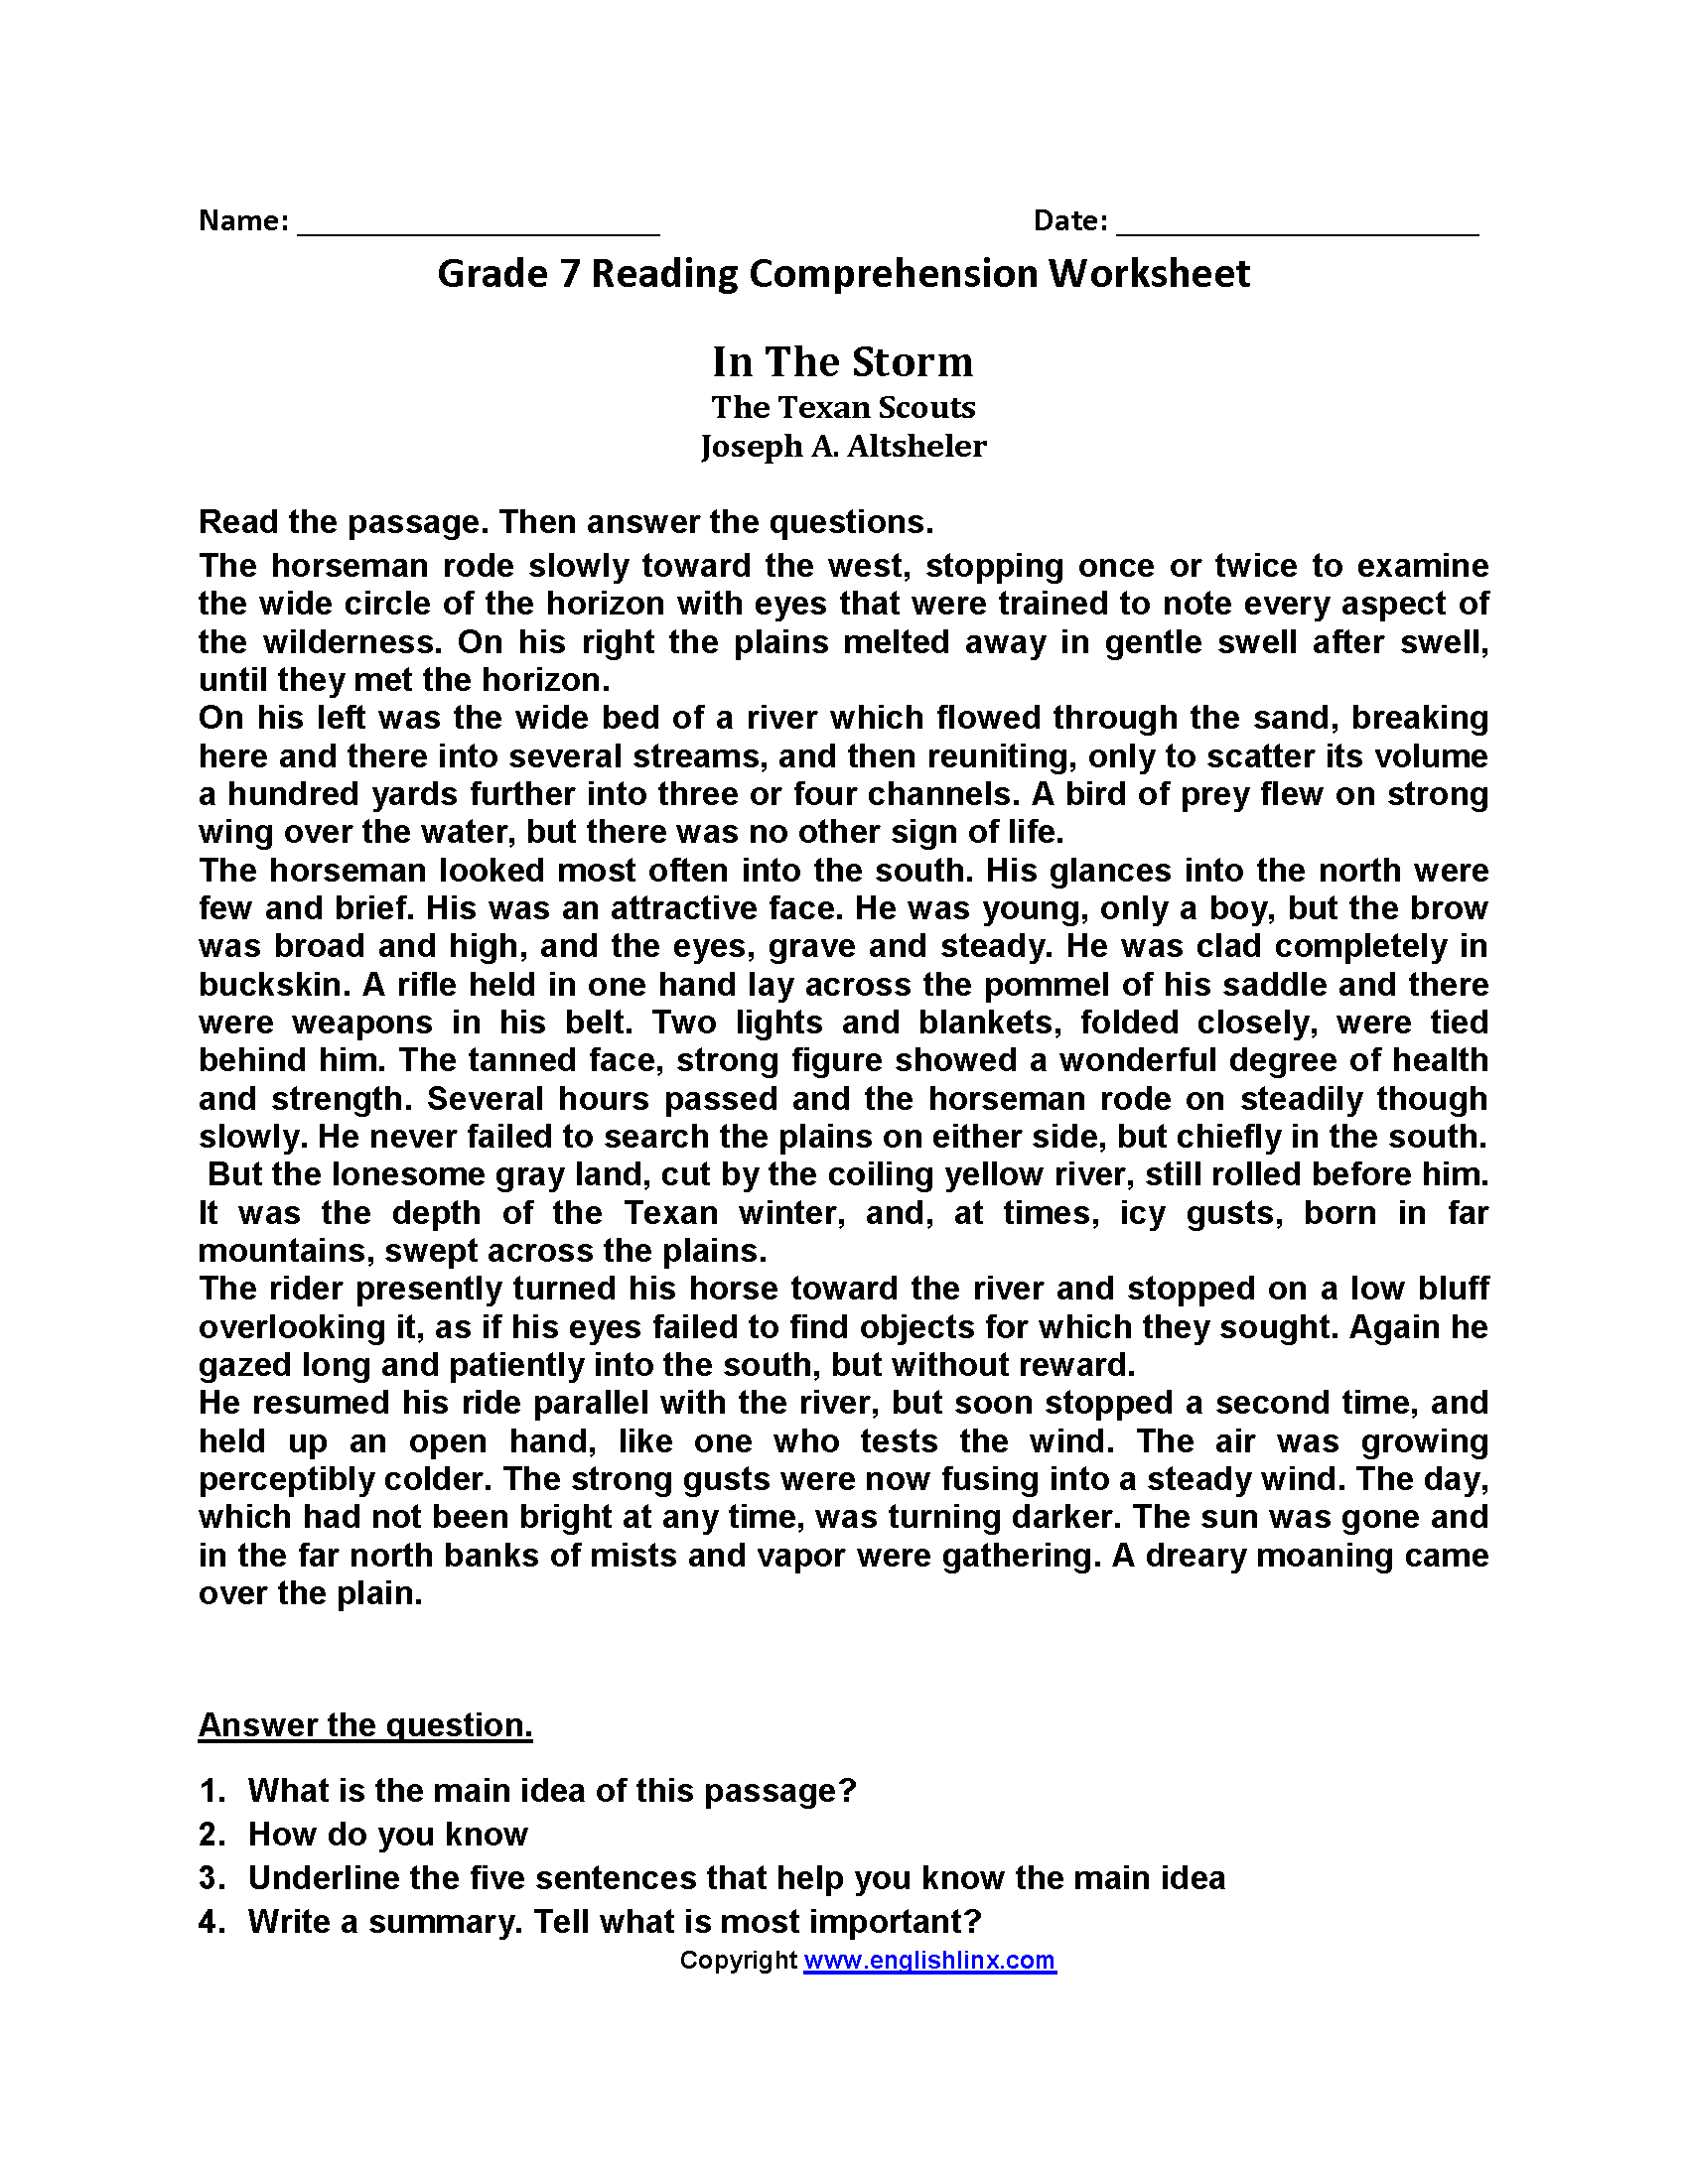 Grade 7 Reading Comprehension Worksheets Pdf